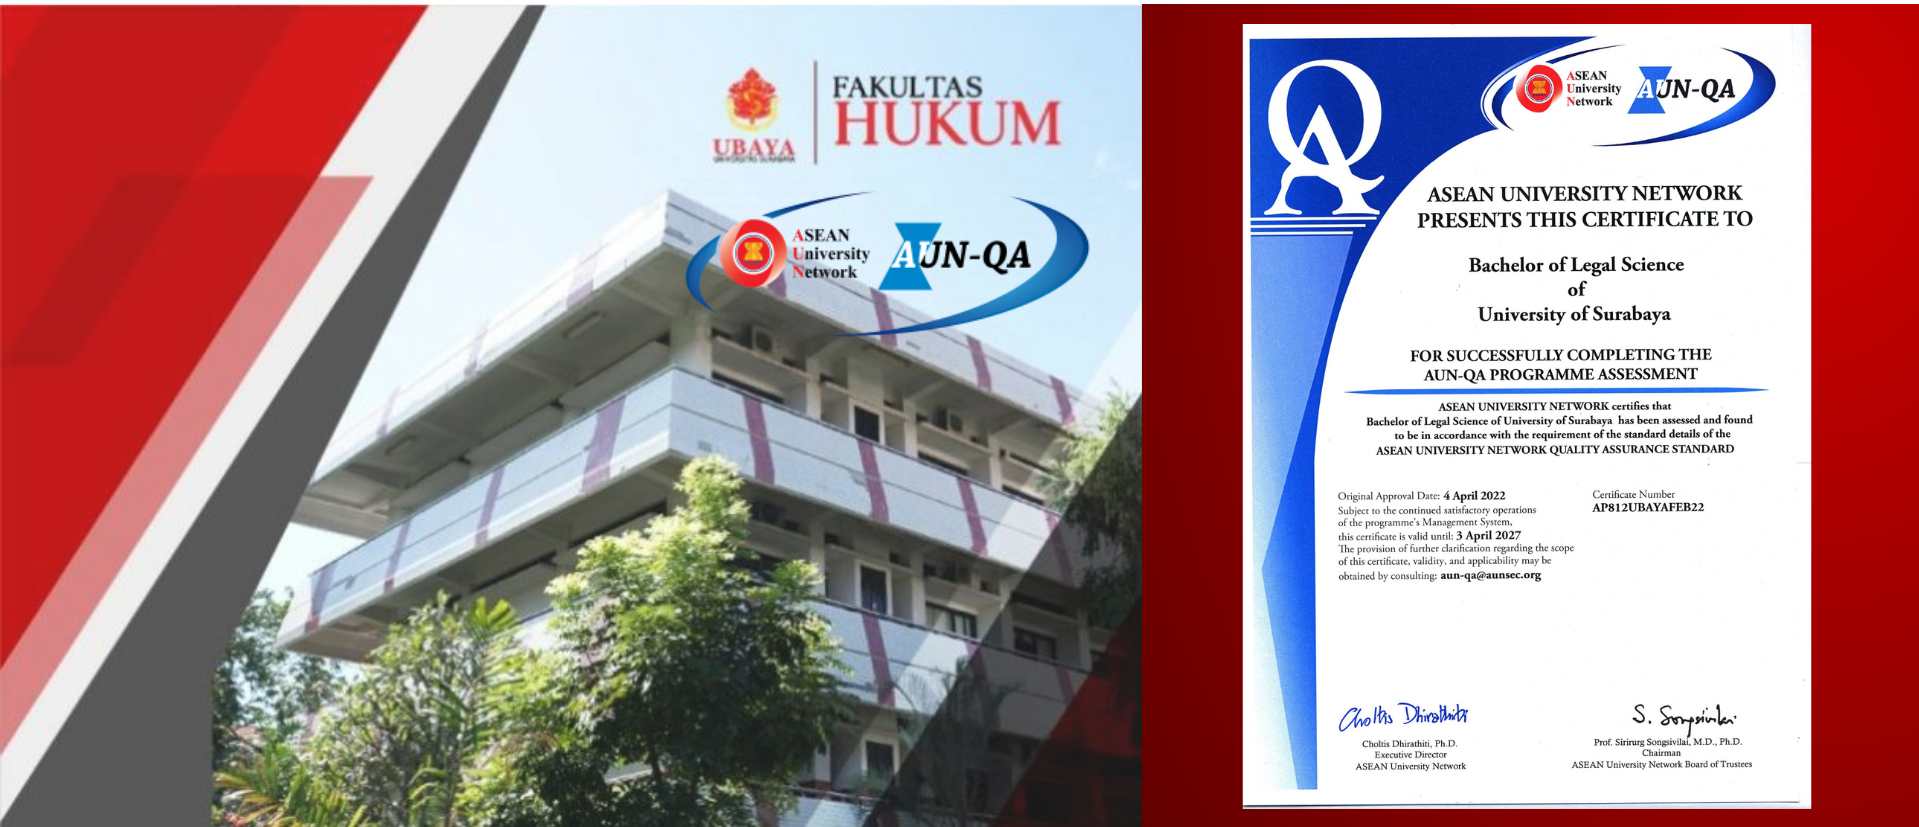 Selamat dan Sukses, FH UBAYA Meraih Sertifikasi ASEAN University Network (AUN)